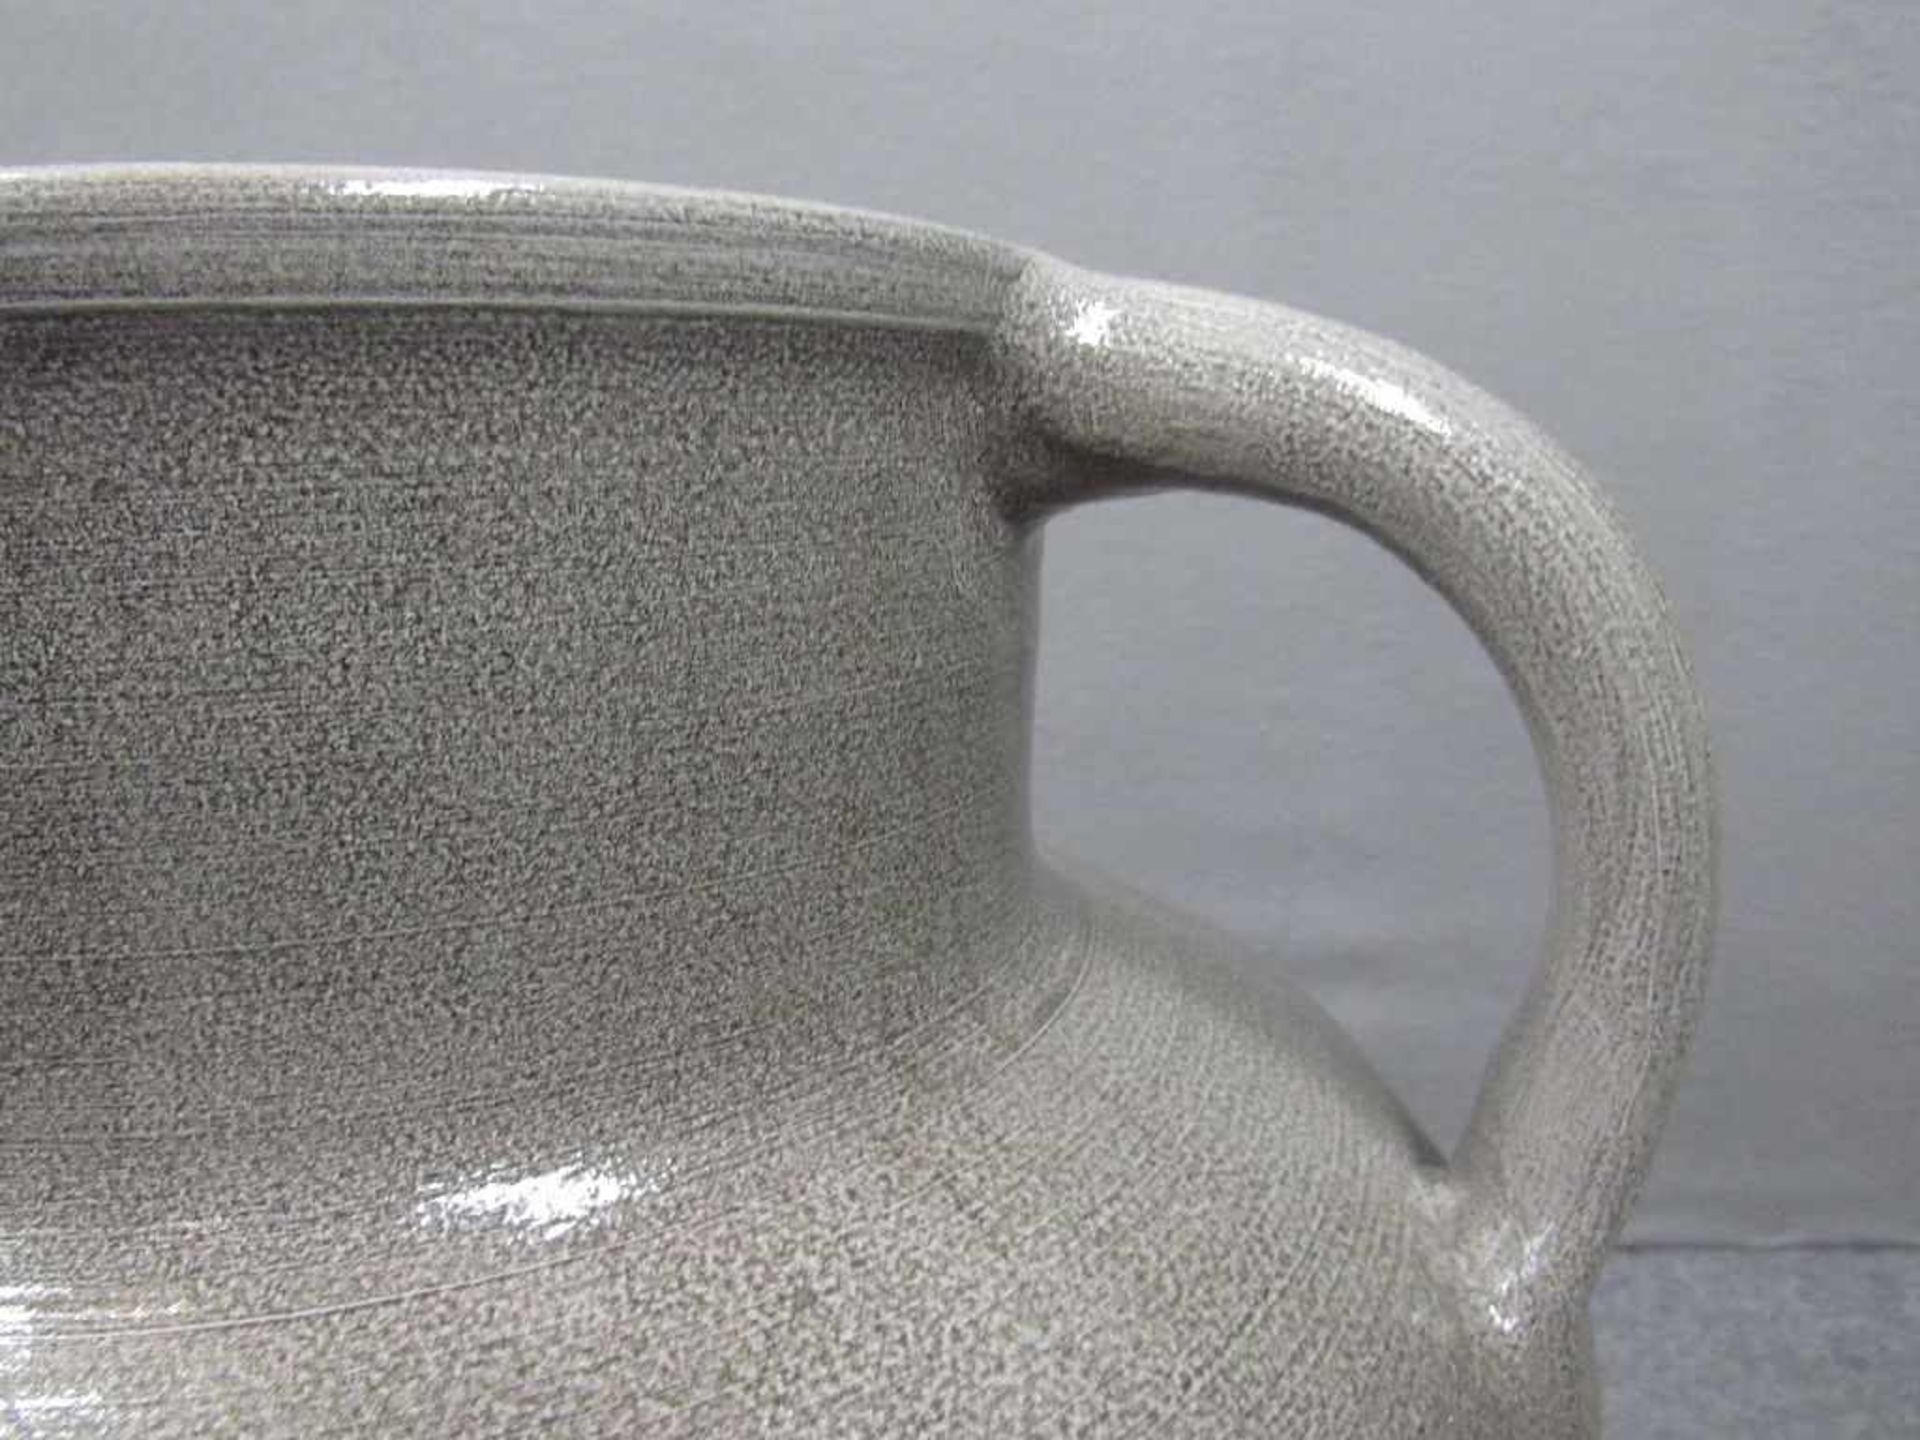 Großer Keramikkrug mit zwei Handhaben unterseits gemarkt 50cm hoch - Image 3 of 3